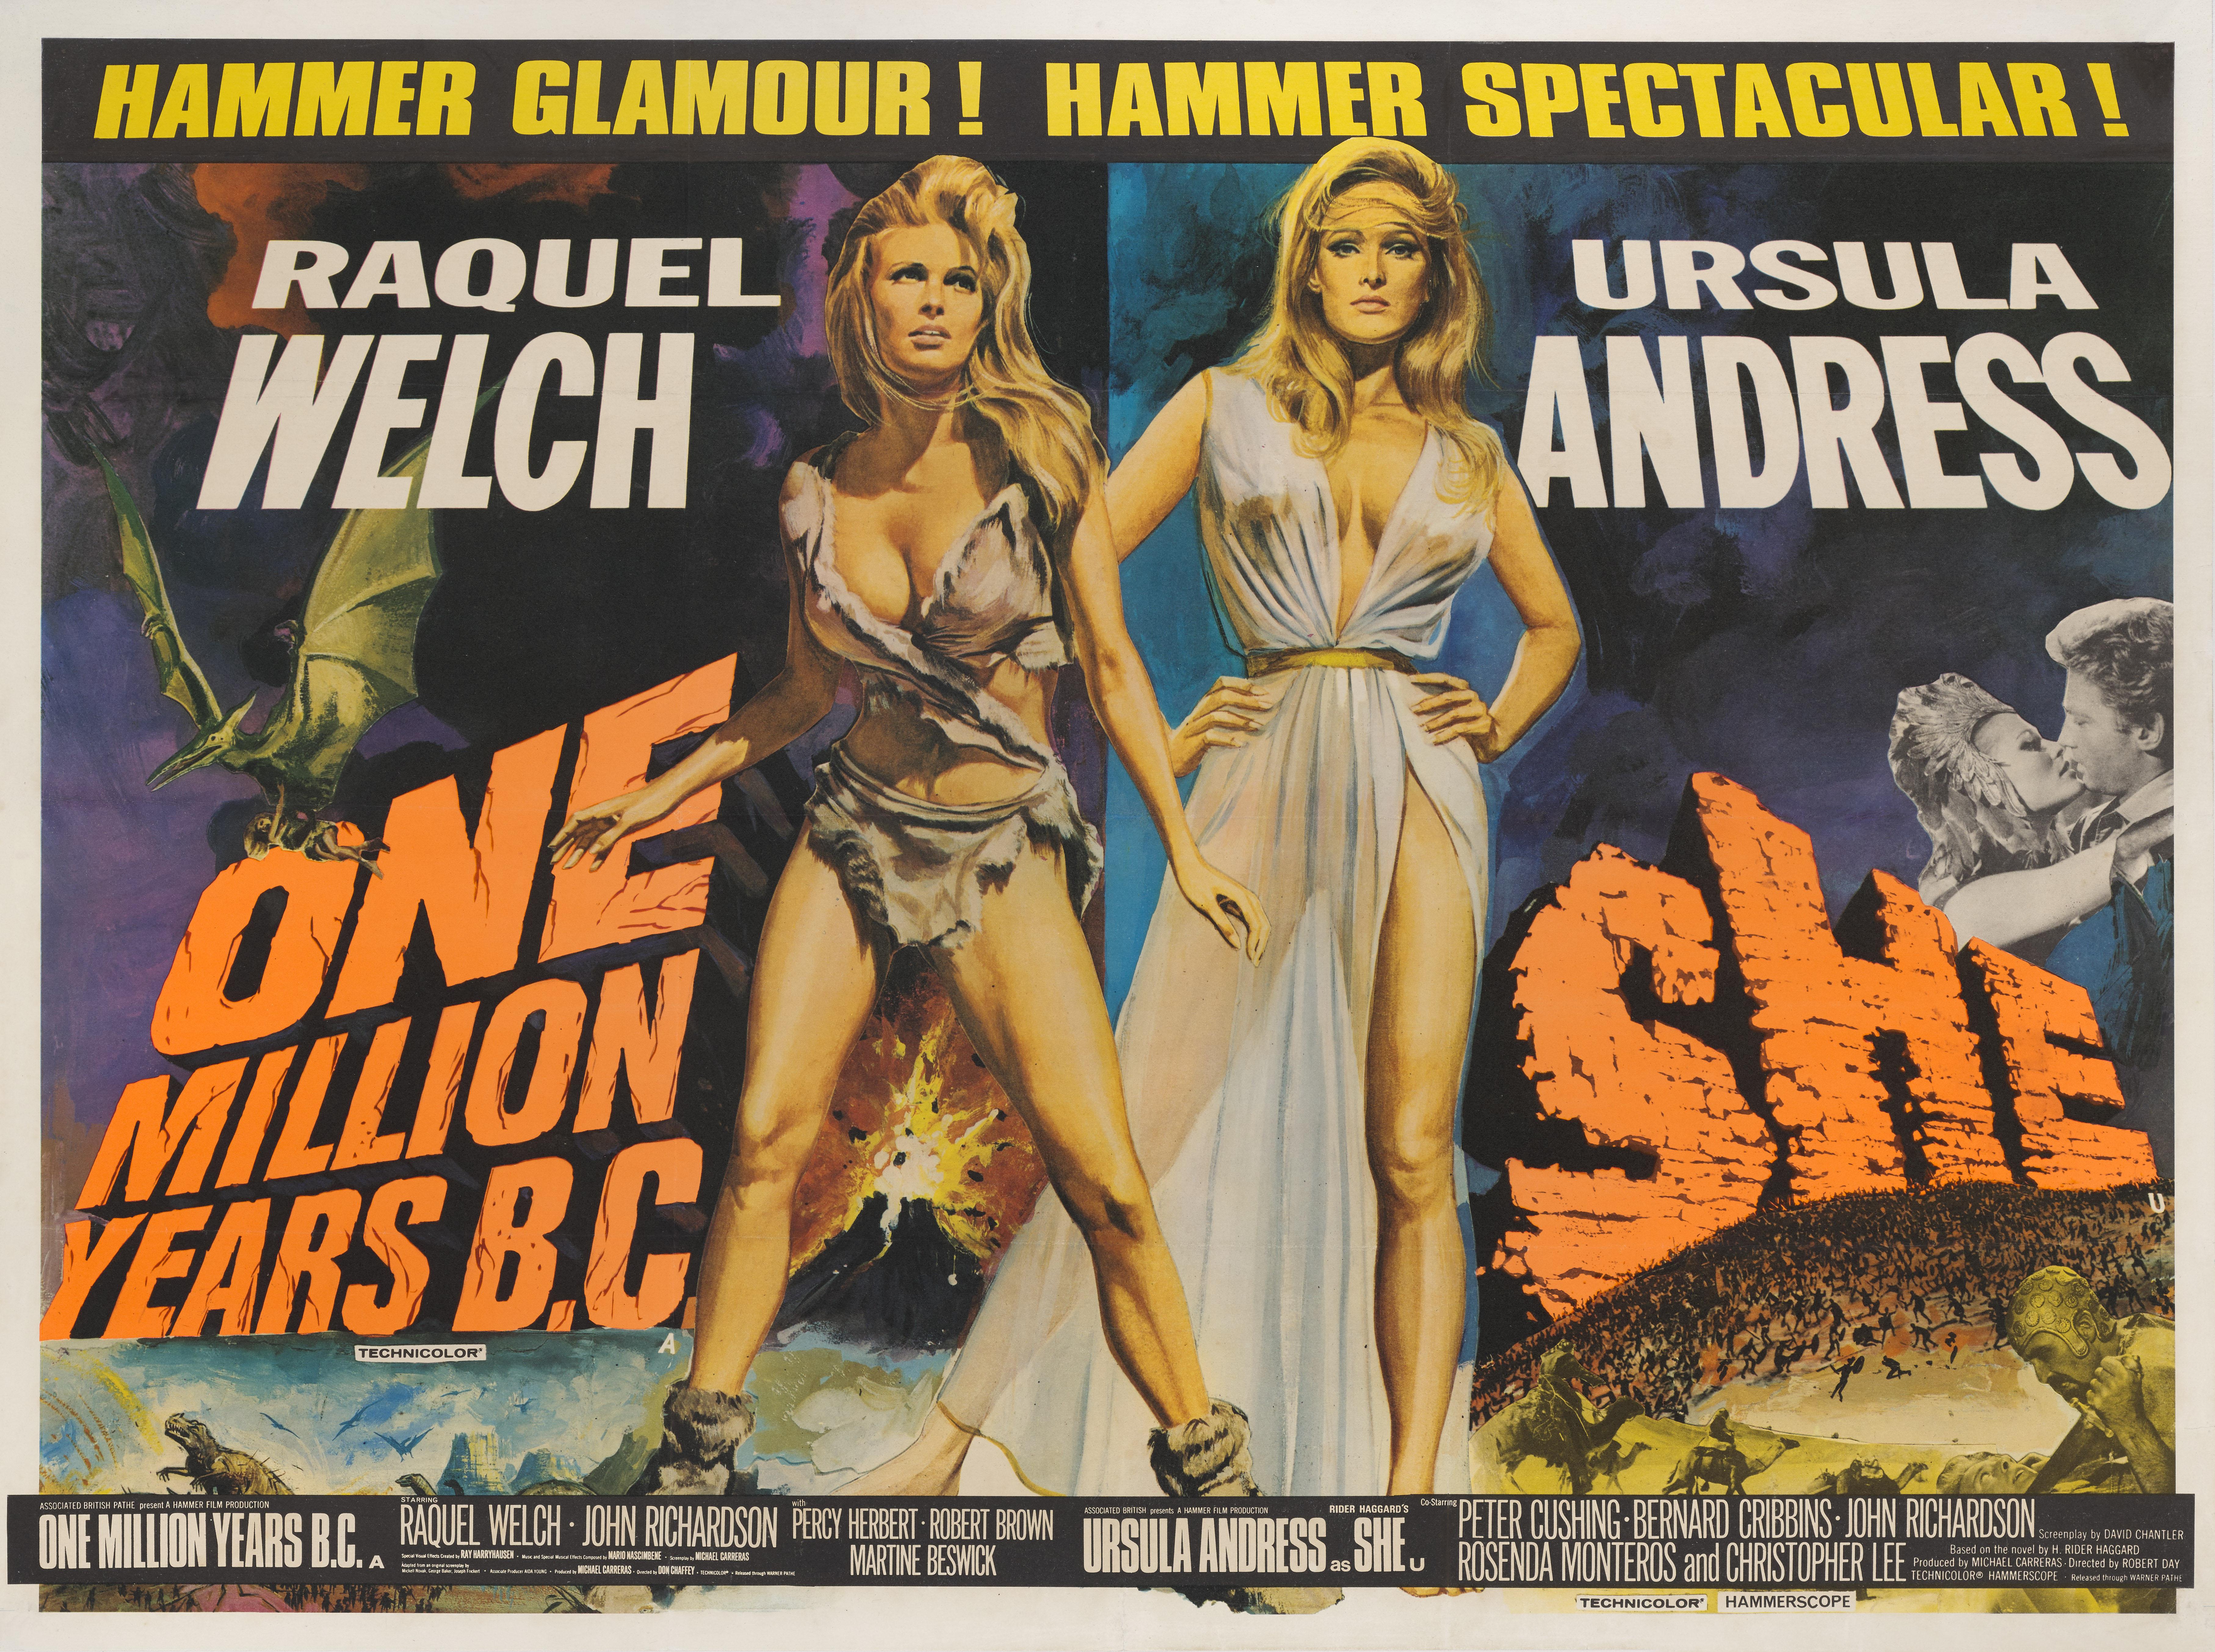 Affiche de film britannique originale utilisée pour la publicité d'un double programme de films d'aventure fantastique de Raquel Welch de 1965 et 1966, She et One Million Years B.C.